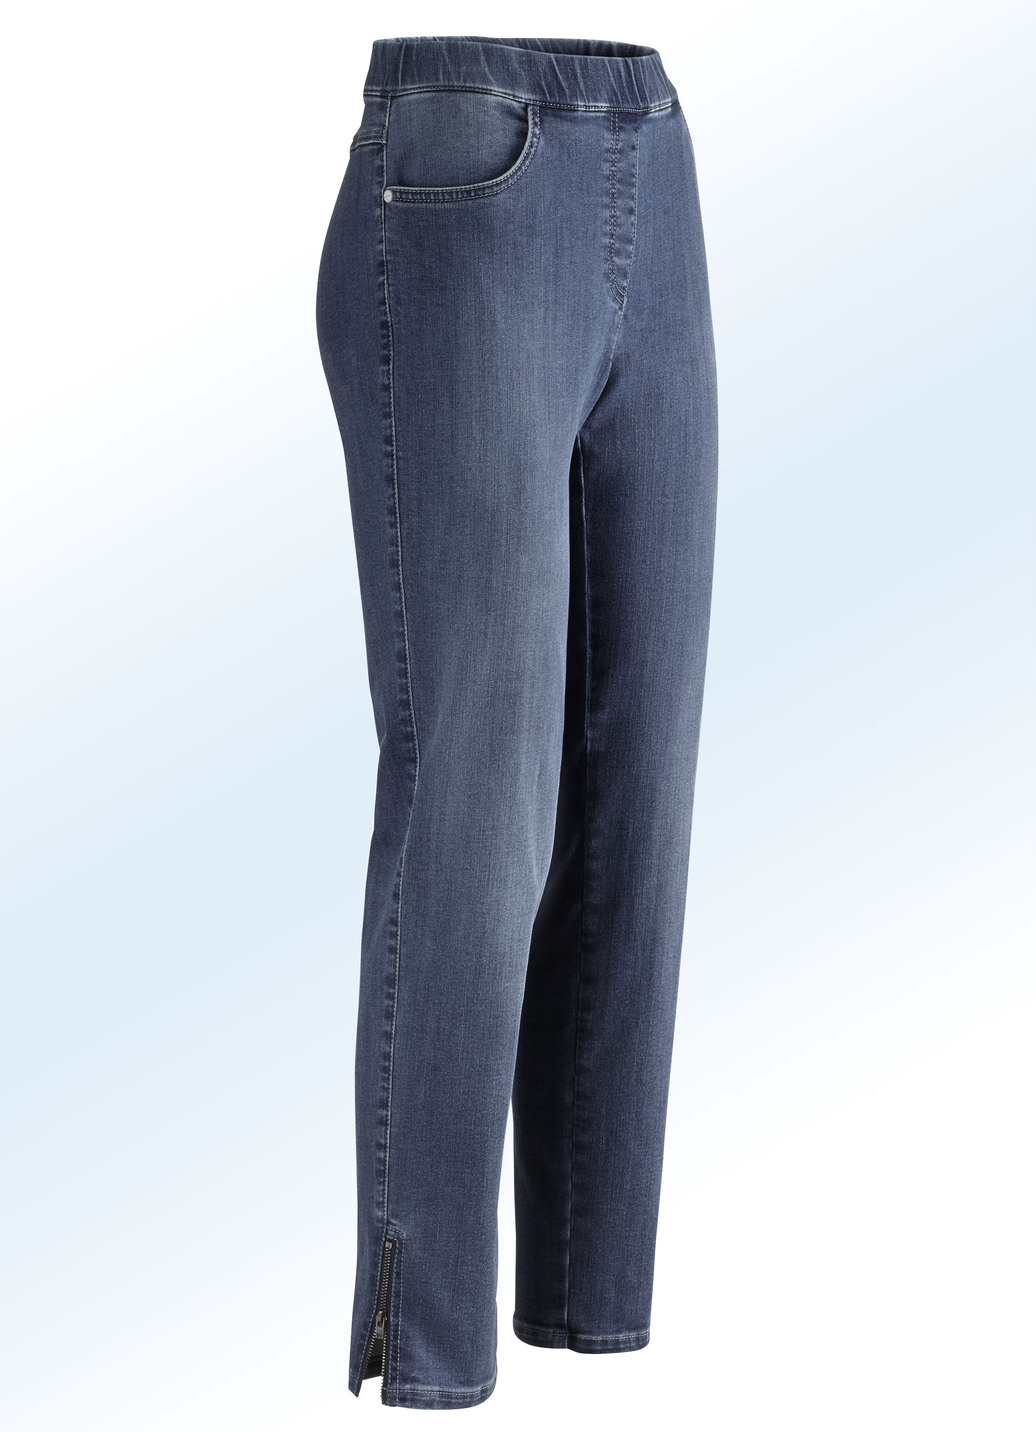 Magic-Jeans mit hohem Stretchanteil, Dunkelblau, Größe 58 von ASCARI